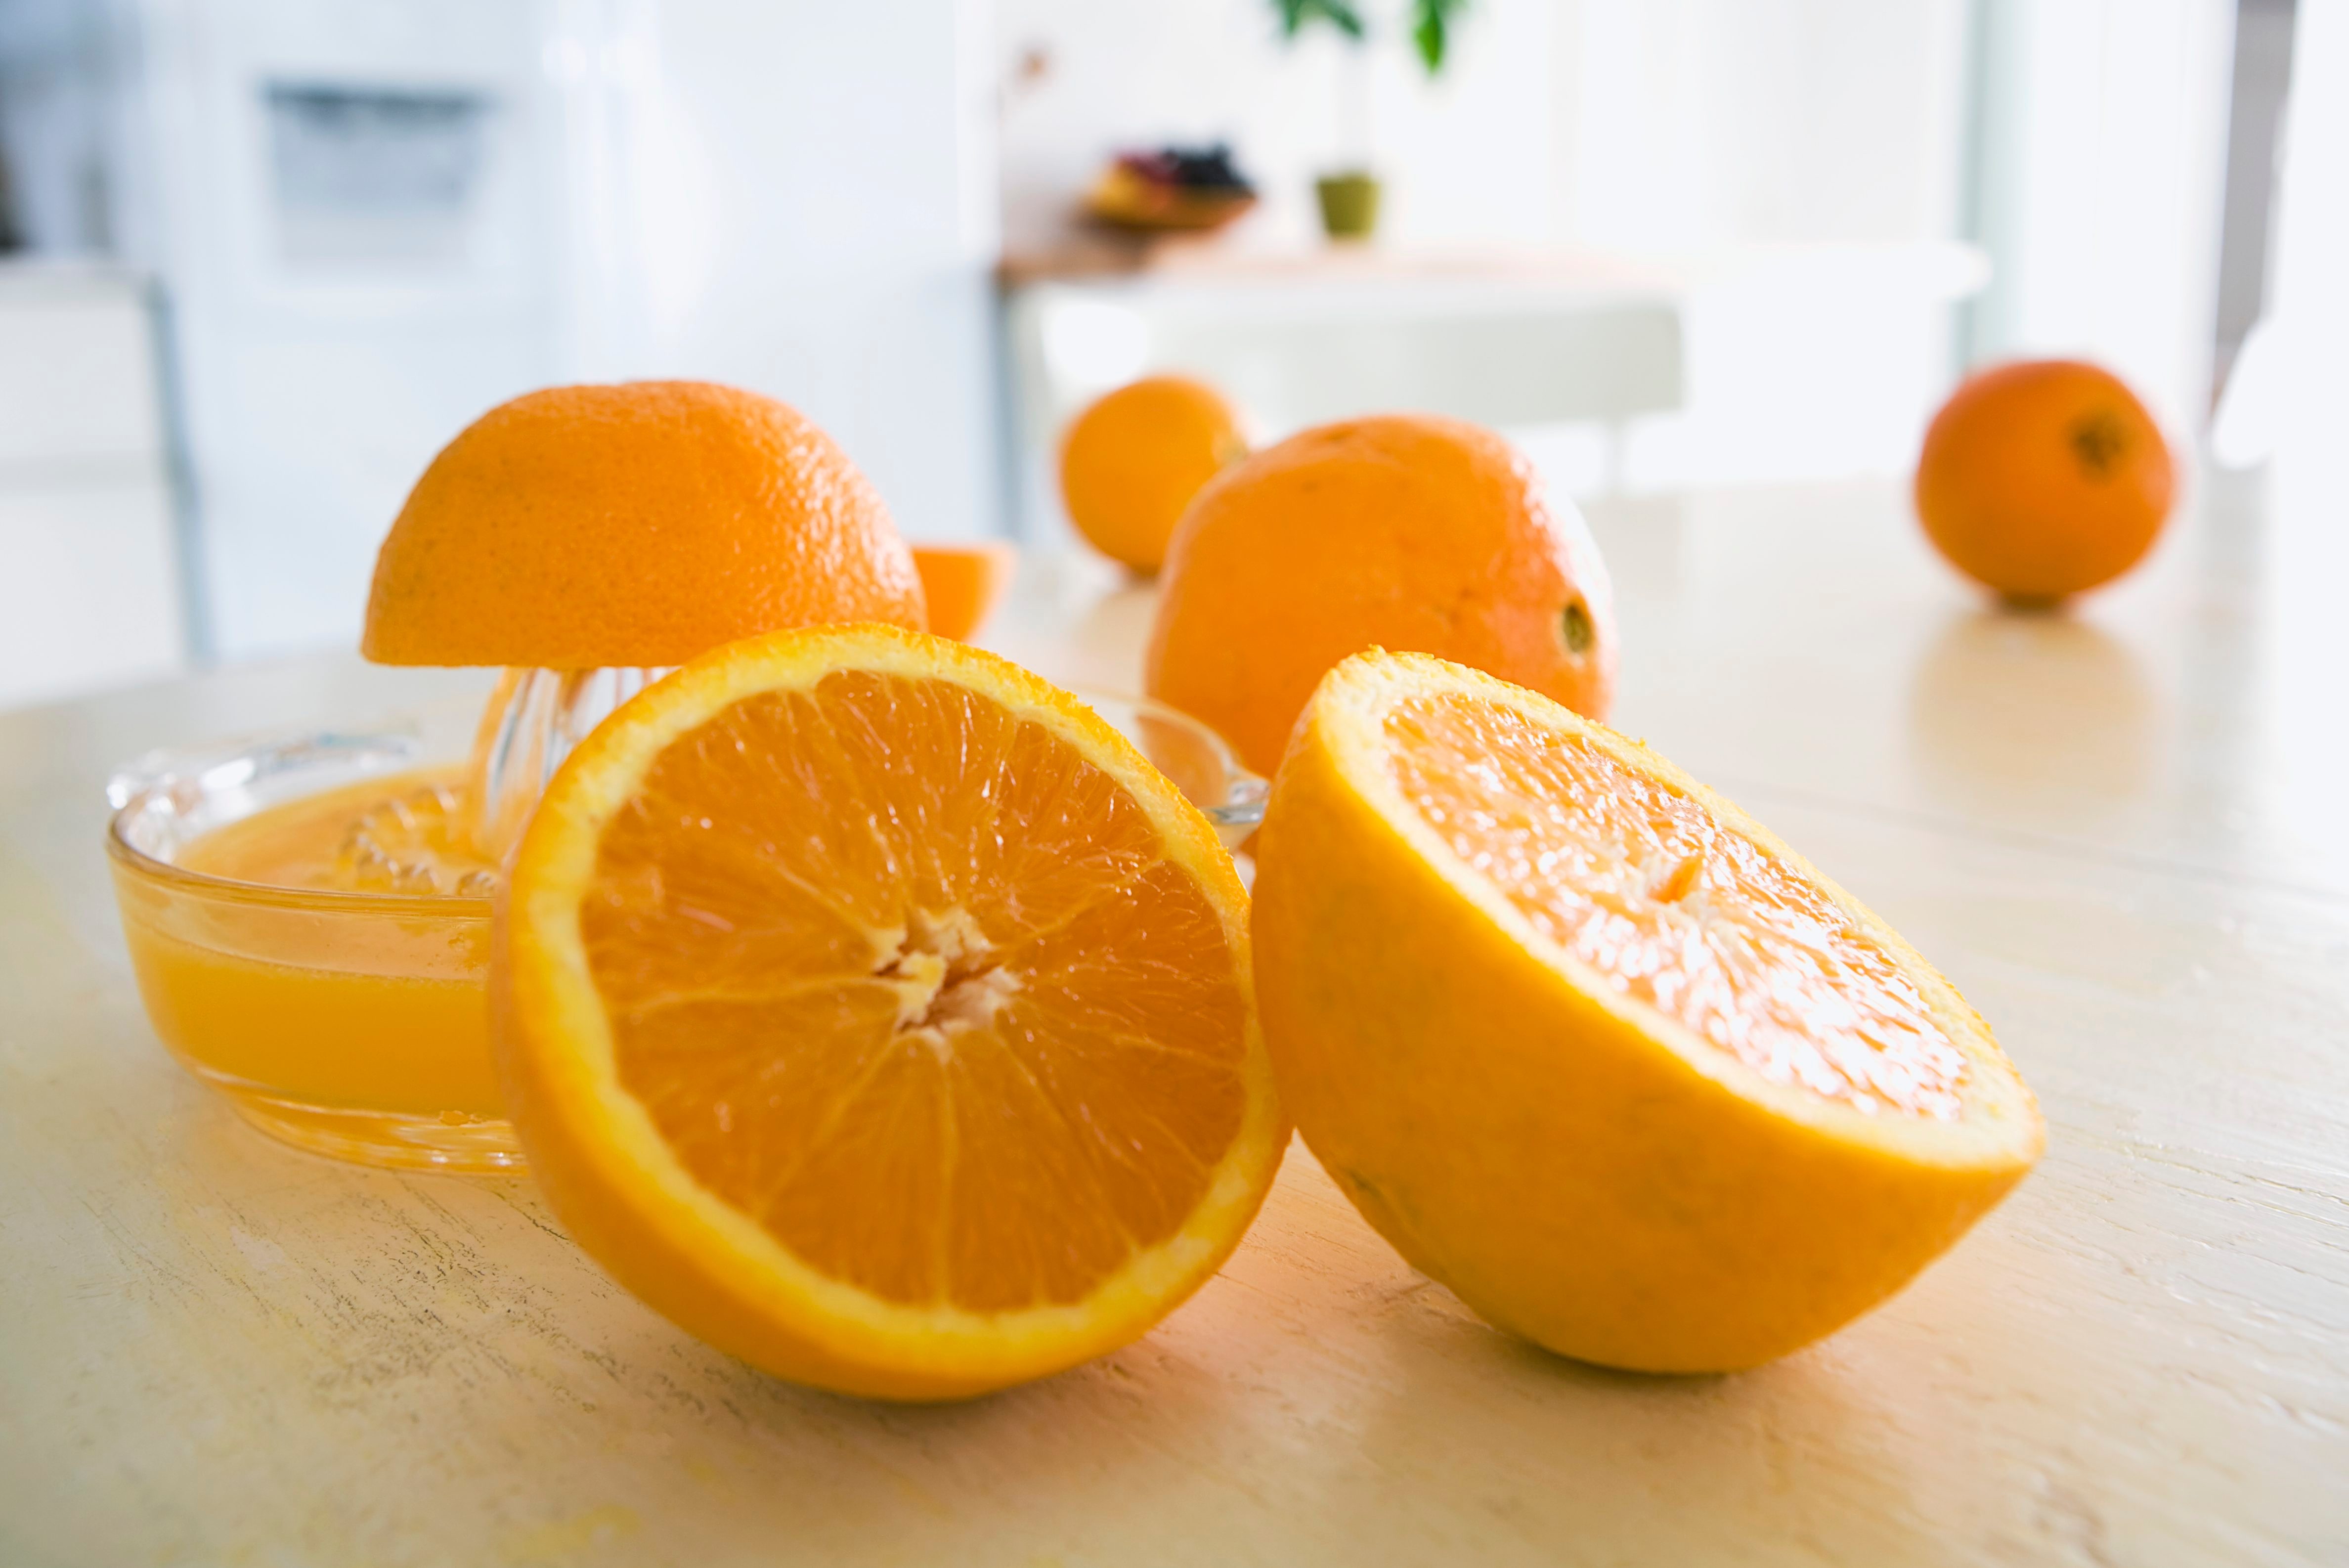 Juicing oranges